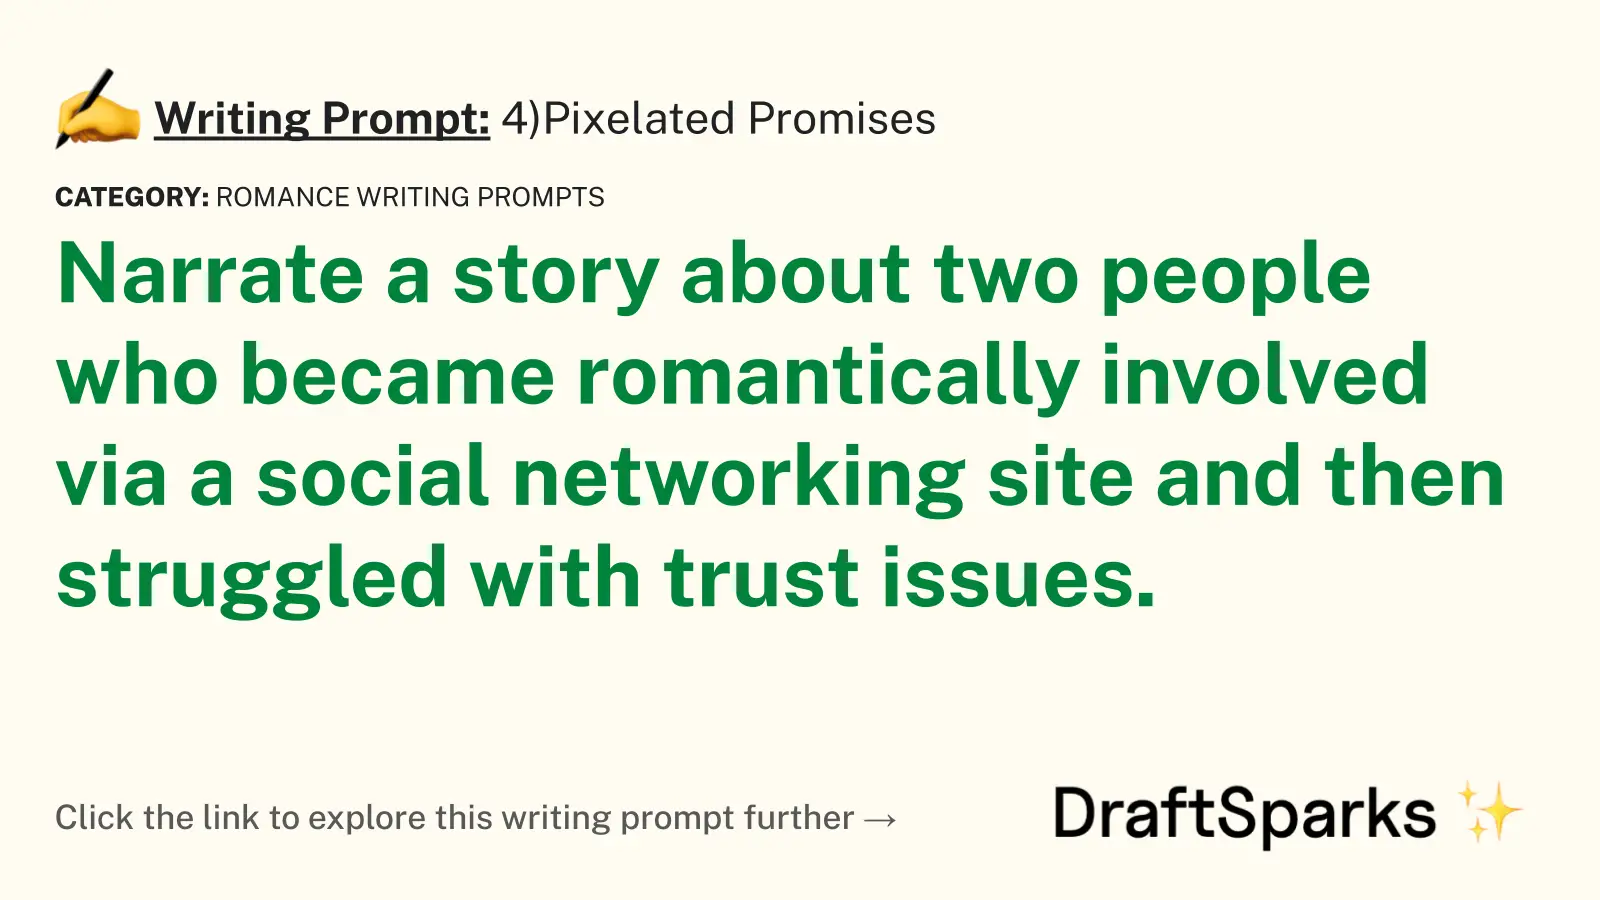 4)Pixelated Promises